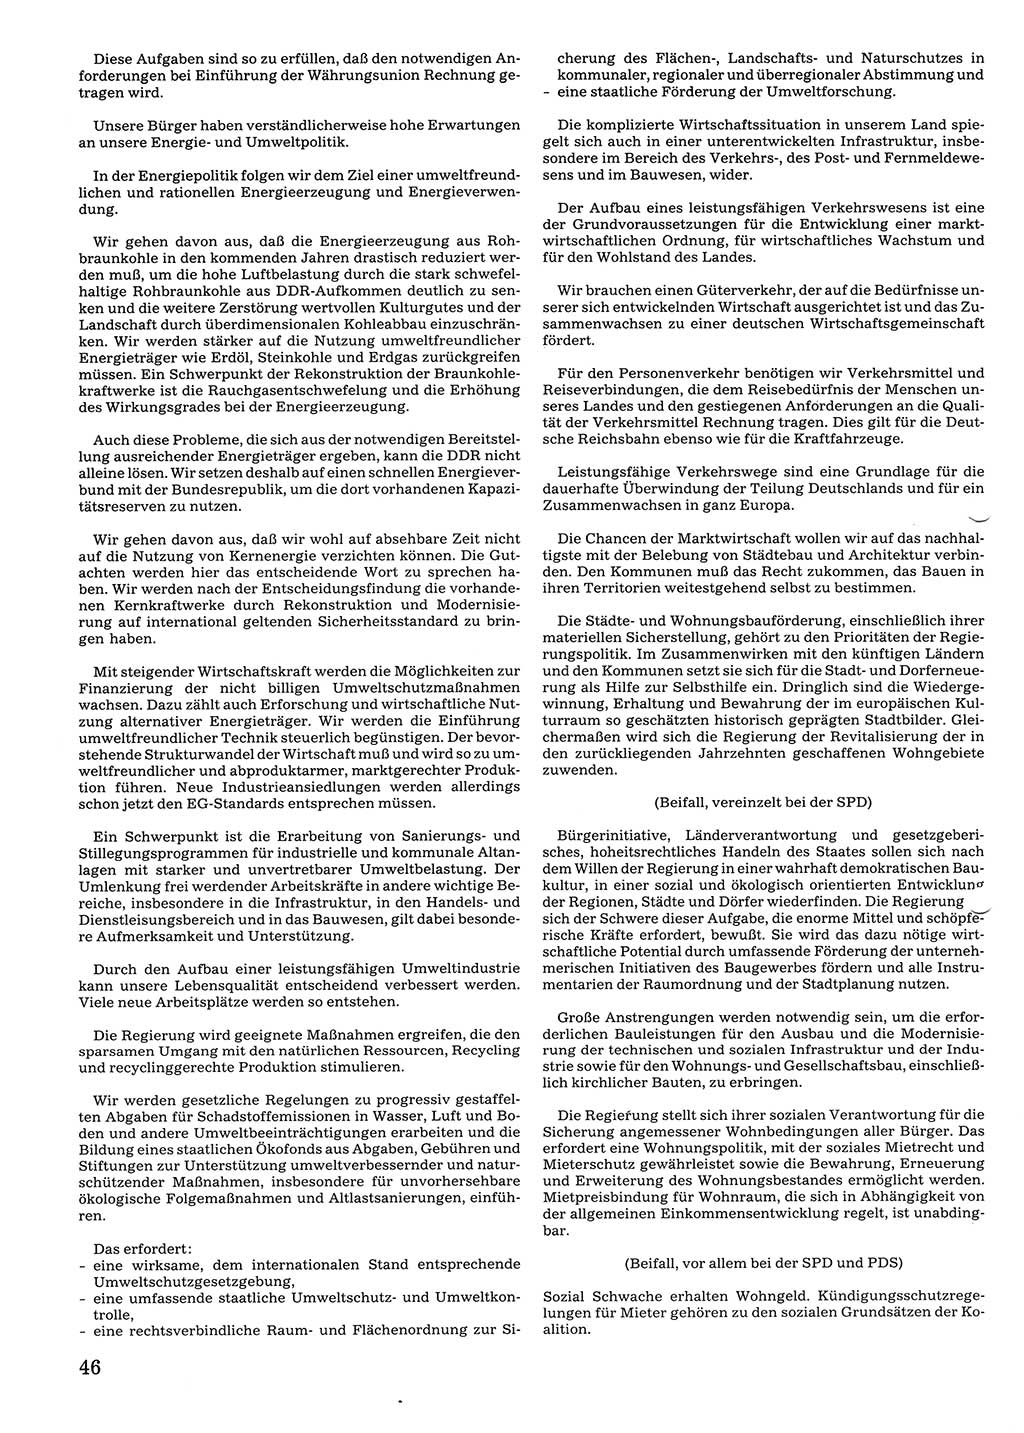 Tagungen der Volkskammer (VK) der Deutschen Demokratischen Republik (DDR), 10. Wahlperiode 1990, Seite 46 (VK. DDR 10. WP. 1990, Prot. Tg. 1-38, 5.4.-2.10.1990, S. 46)